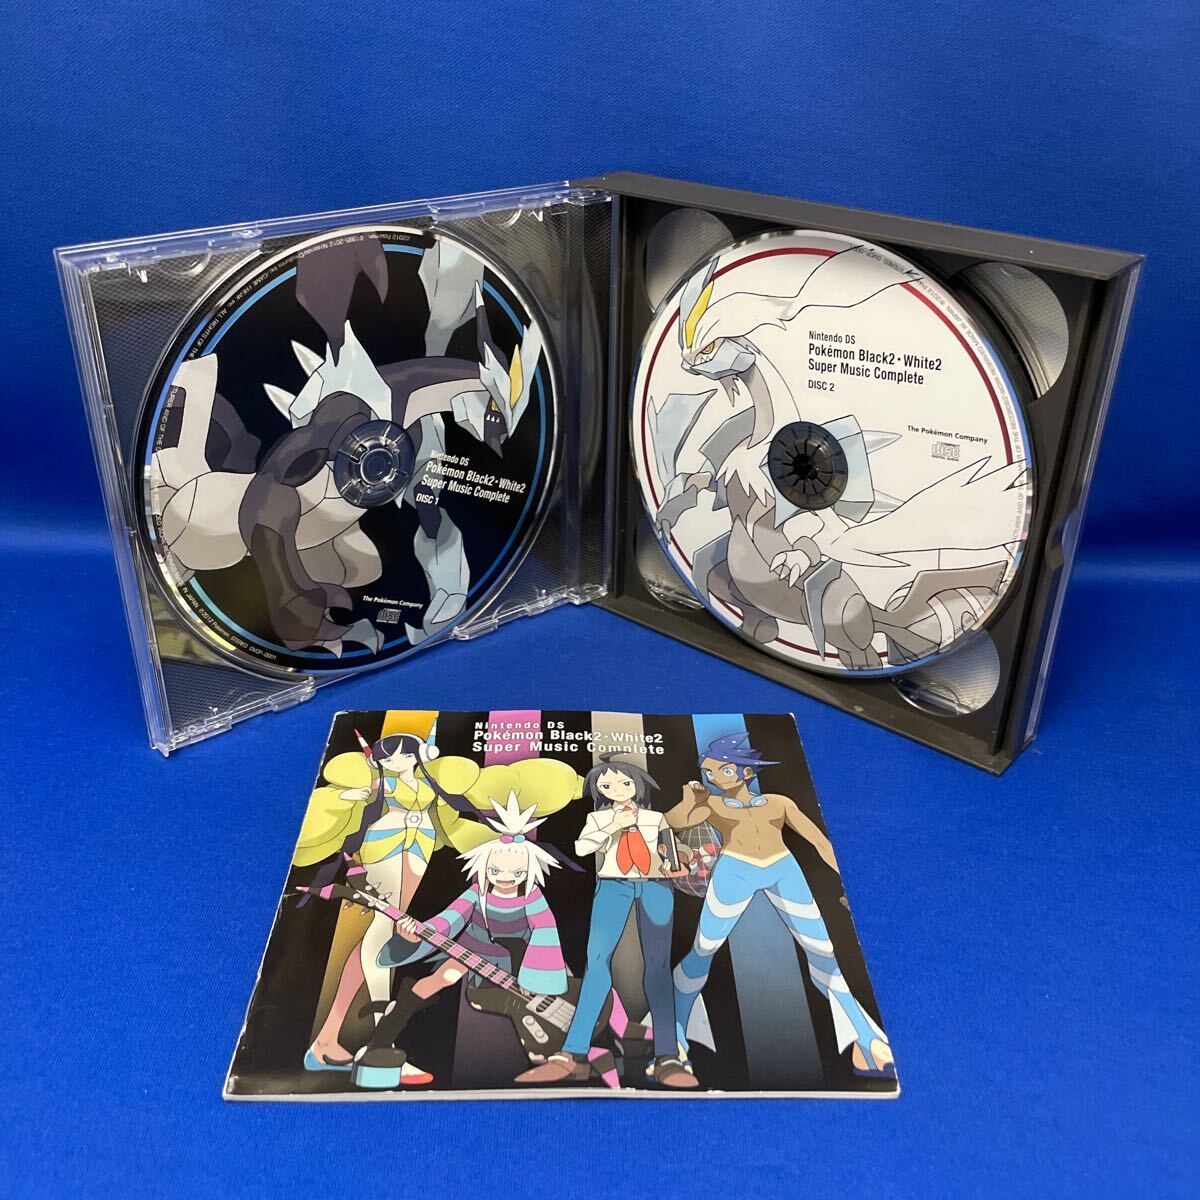 ニンテンドーDS ポケモンブラック2ホワイト2 スーパーミュージックコンプリート / 4枚組CD / ゲーム音楽/ レンタル落ち / OVCP-0001の画像2